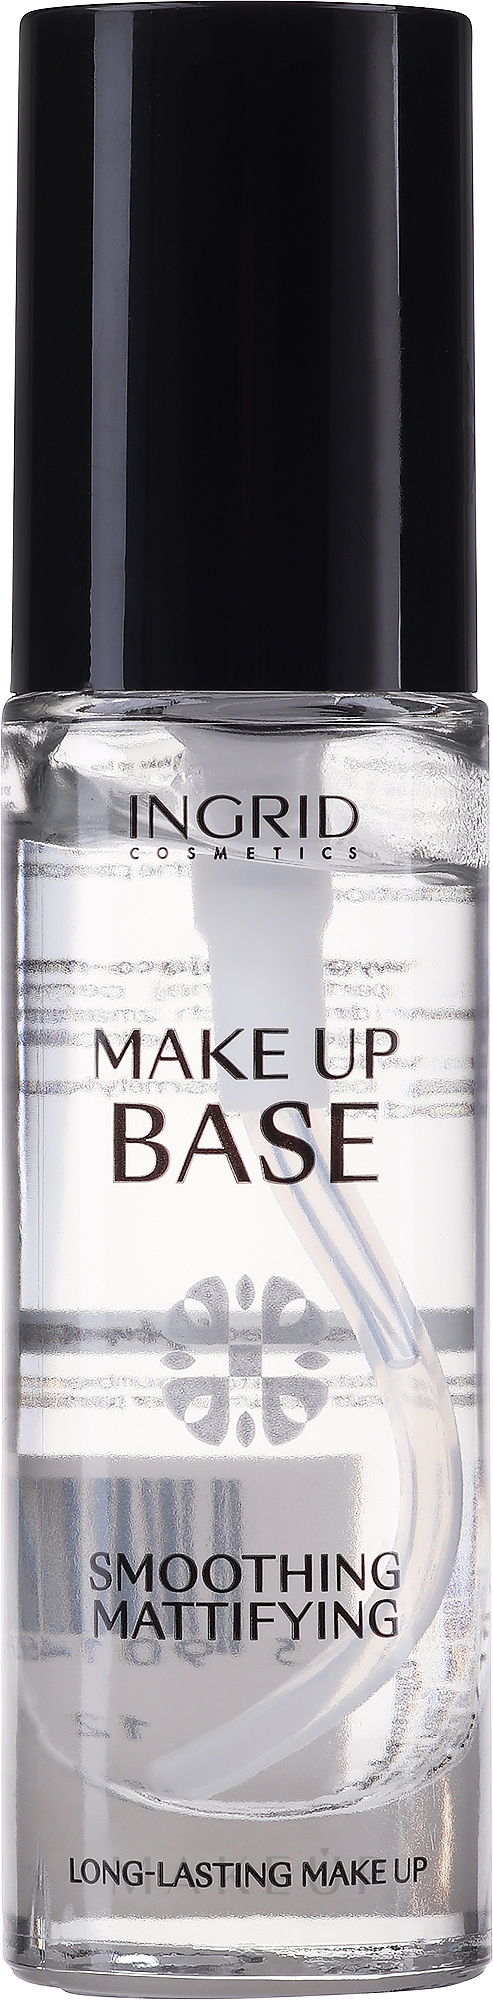 Glättende und mattierende Make-Up Base - Ingrid Cosmetics Make Up Base — Foto 30 ml